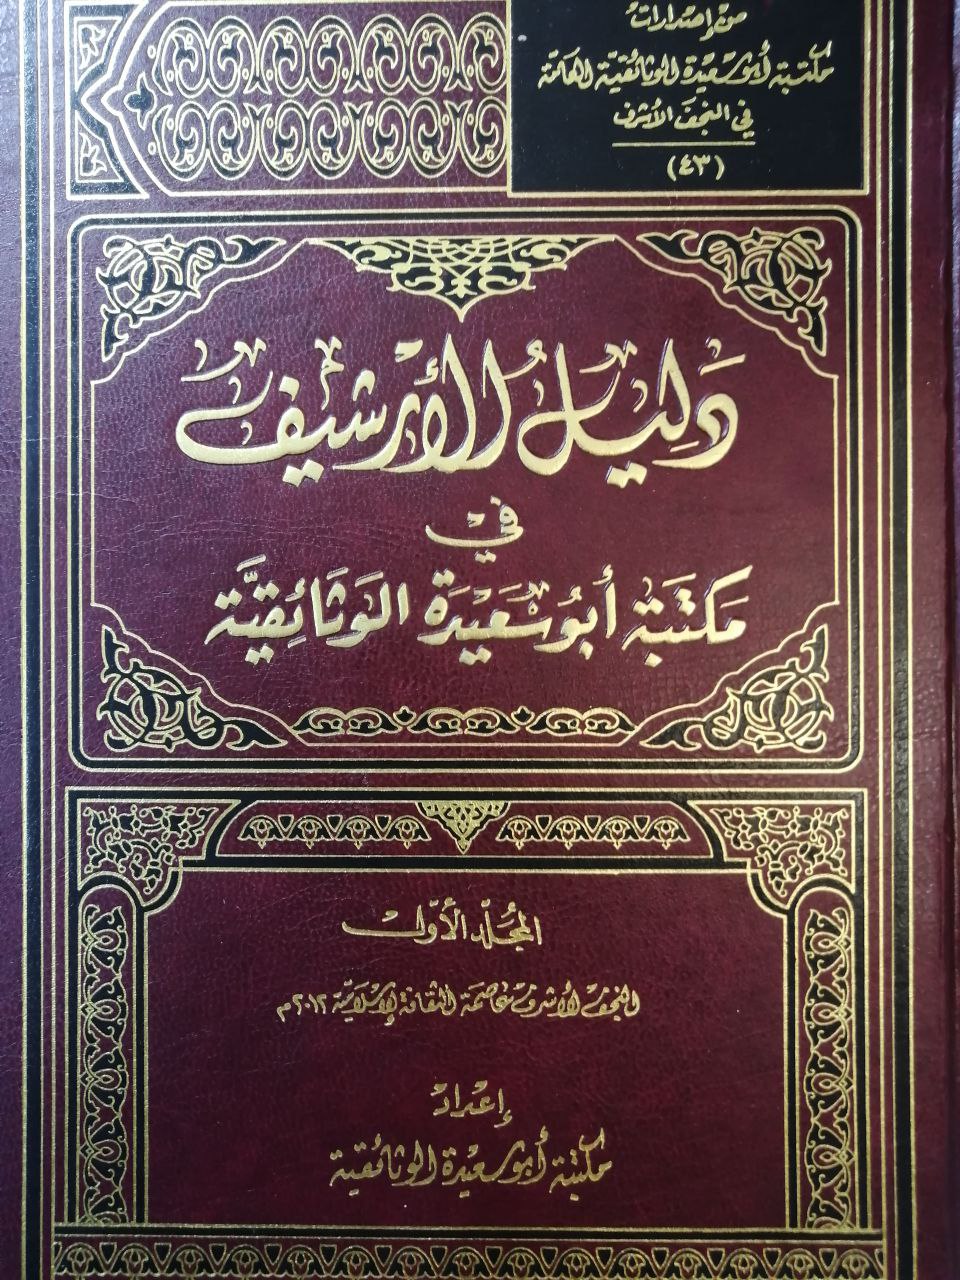 دليل الارشيف في مكتبة أبو سعيدة الوثائقية